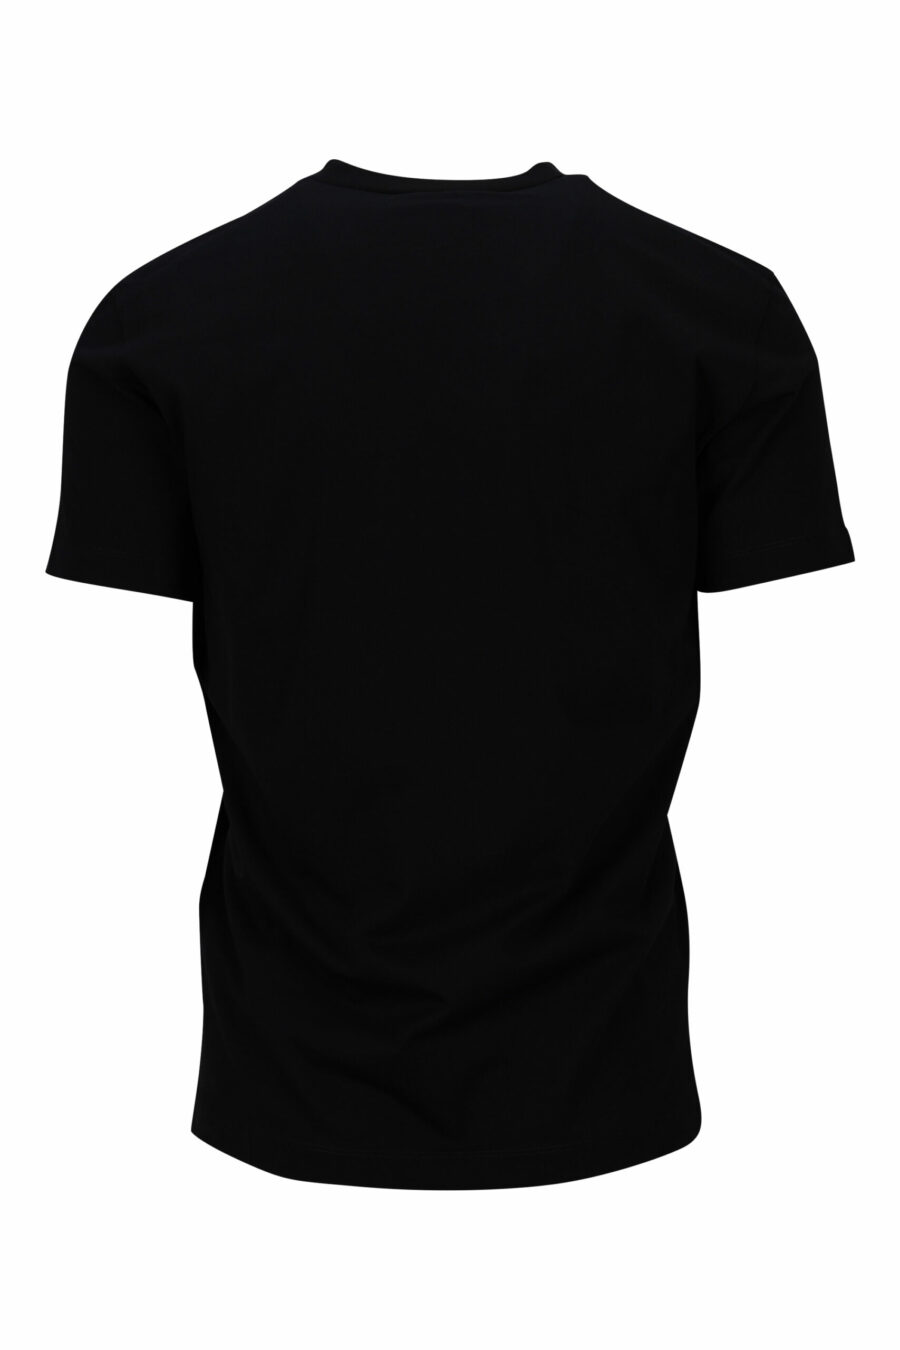 Camiseta negra con maxilogo "ceresio 9 milano" - 8054148504984 1 scaled